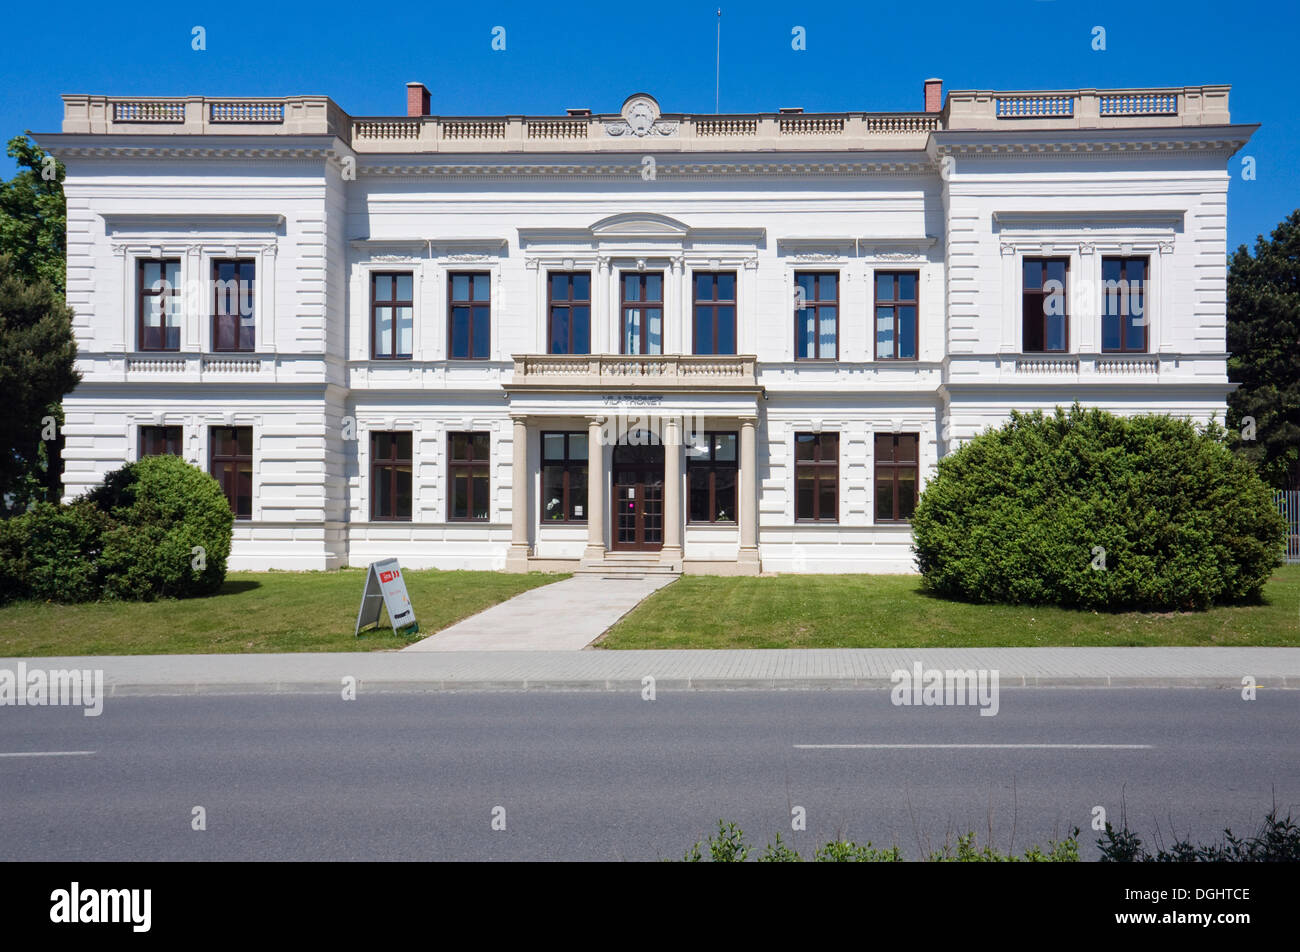 Villa classique Thonet à partir de 1873, Bystrice pod Hostynem, Kromeriz, district de la région de Zlin, République Tchèque, Europe Banque D'Images